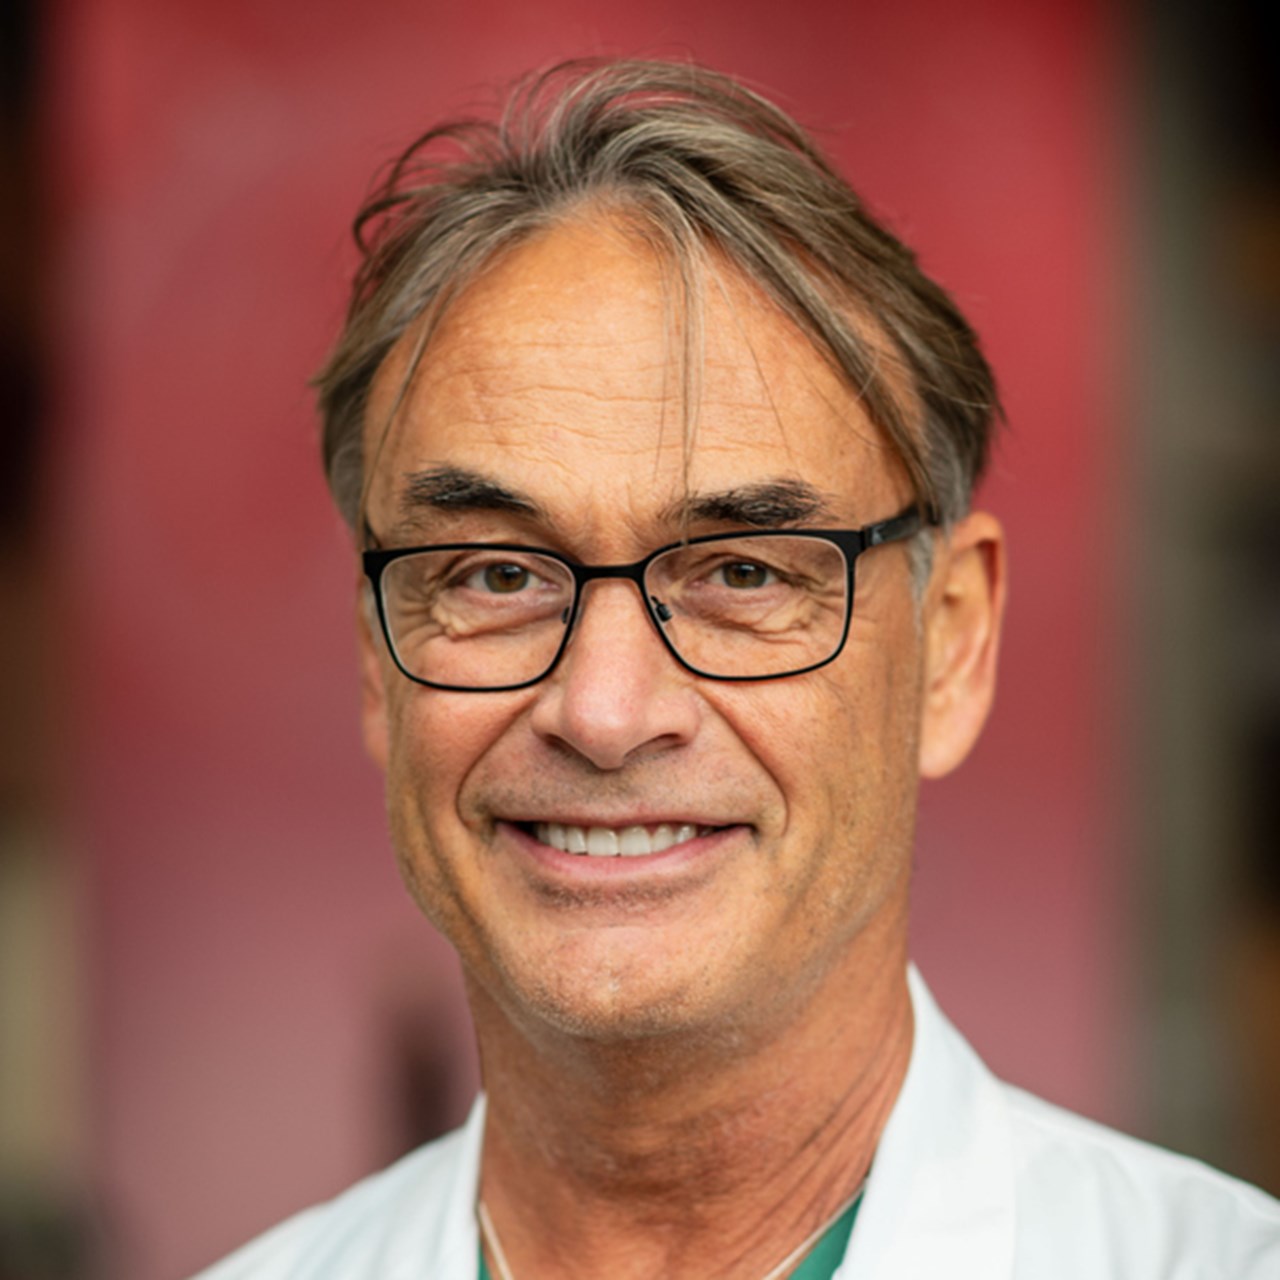 Porträttbild på Niklas Marklund, professor/överläkare, Lunds universitet.